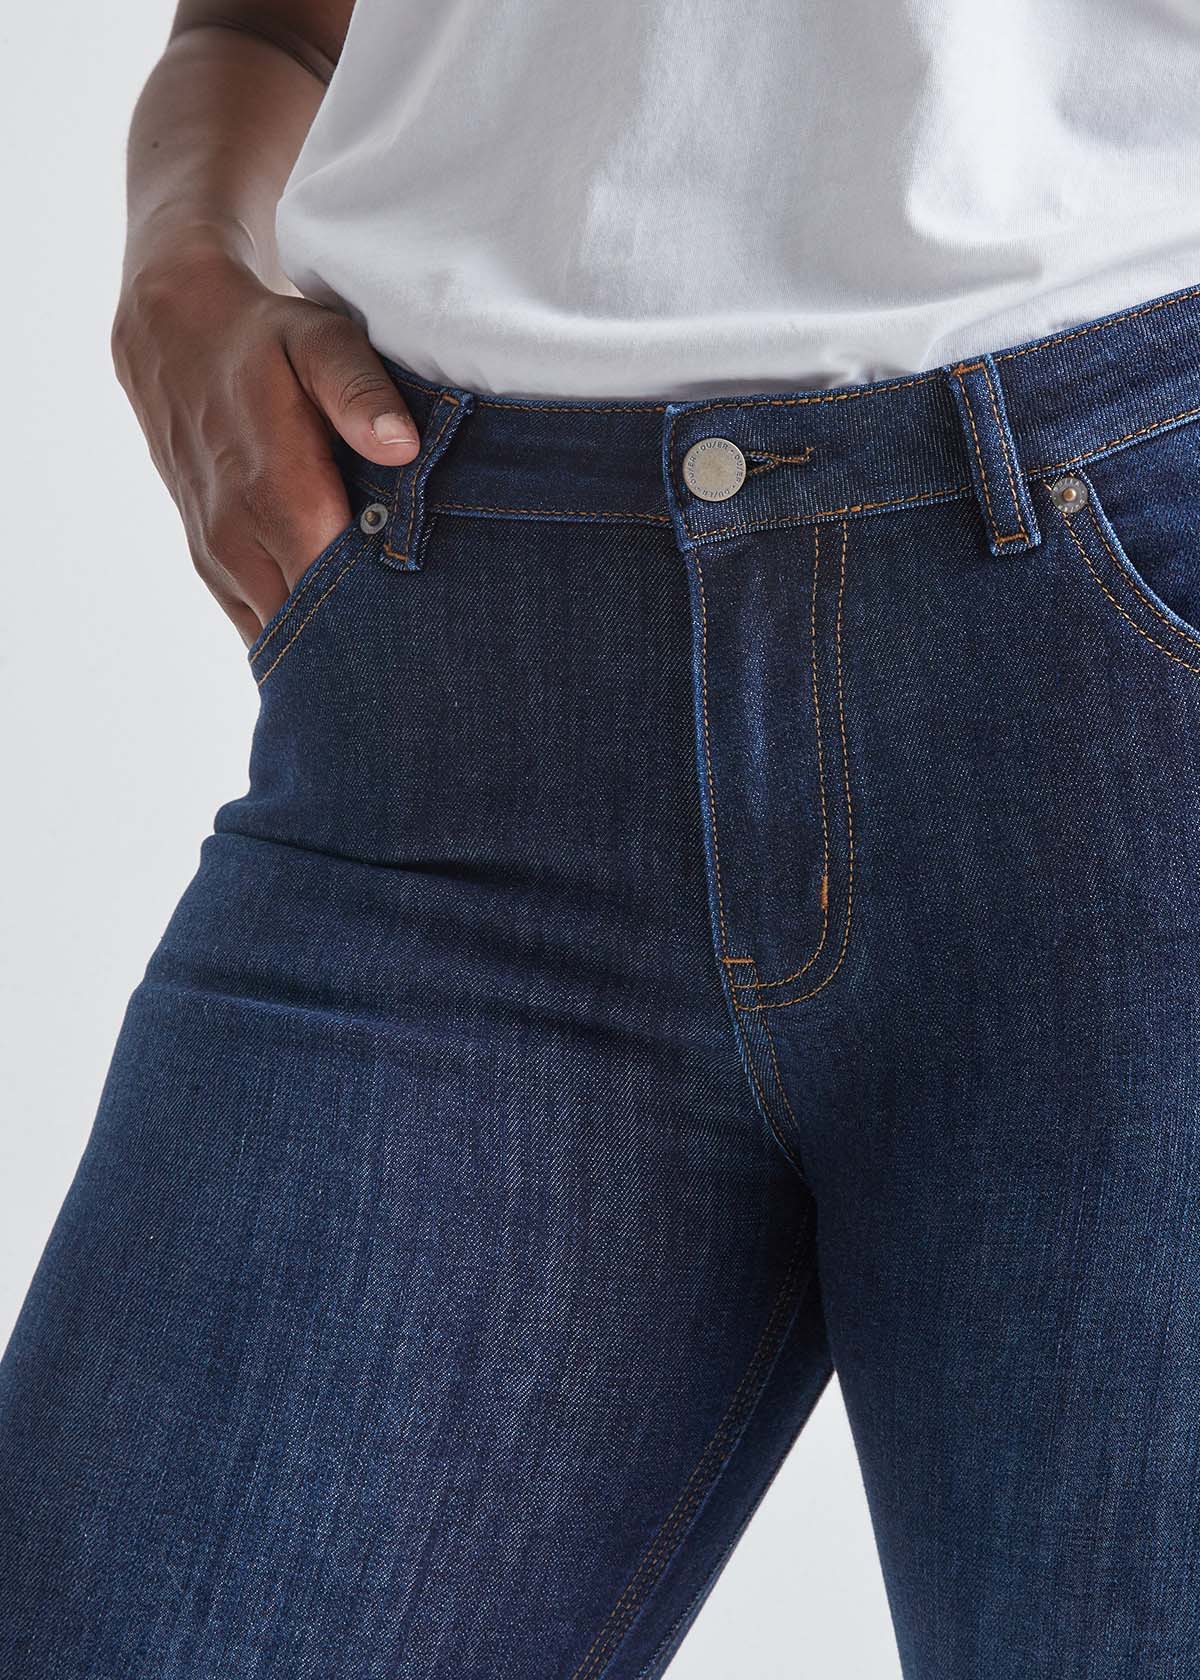 Duer Performance Denim Slim Straight Jeans, 30 Inseam - Wash